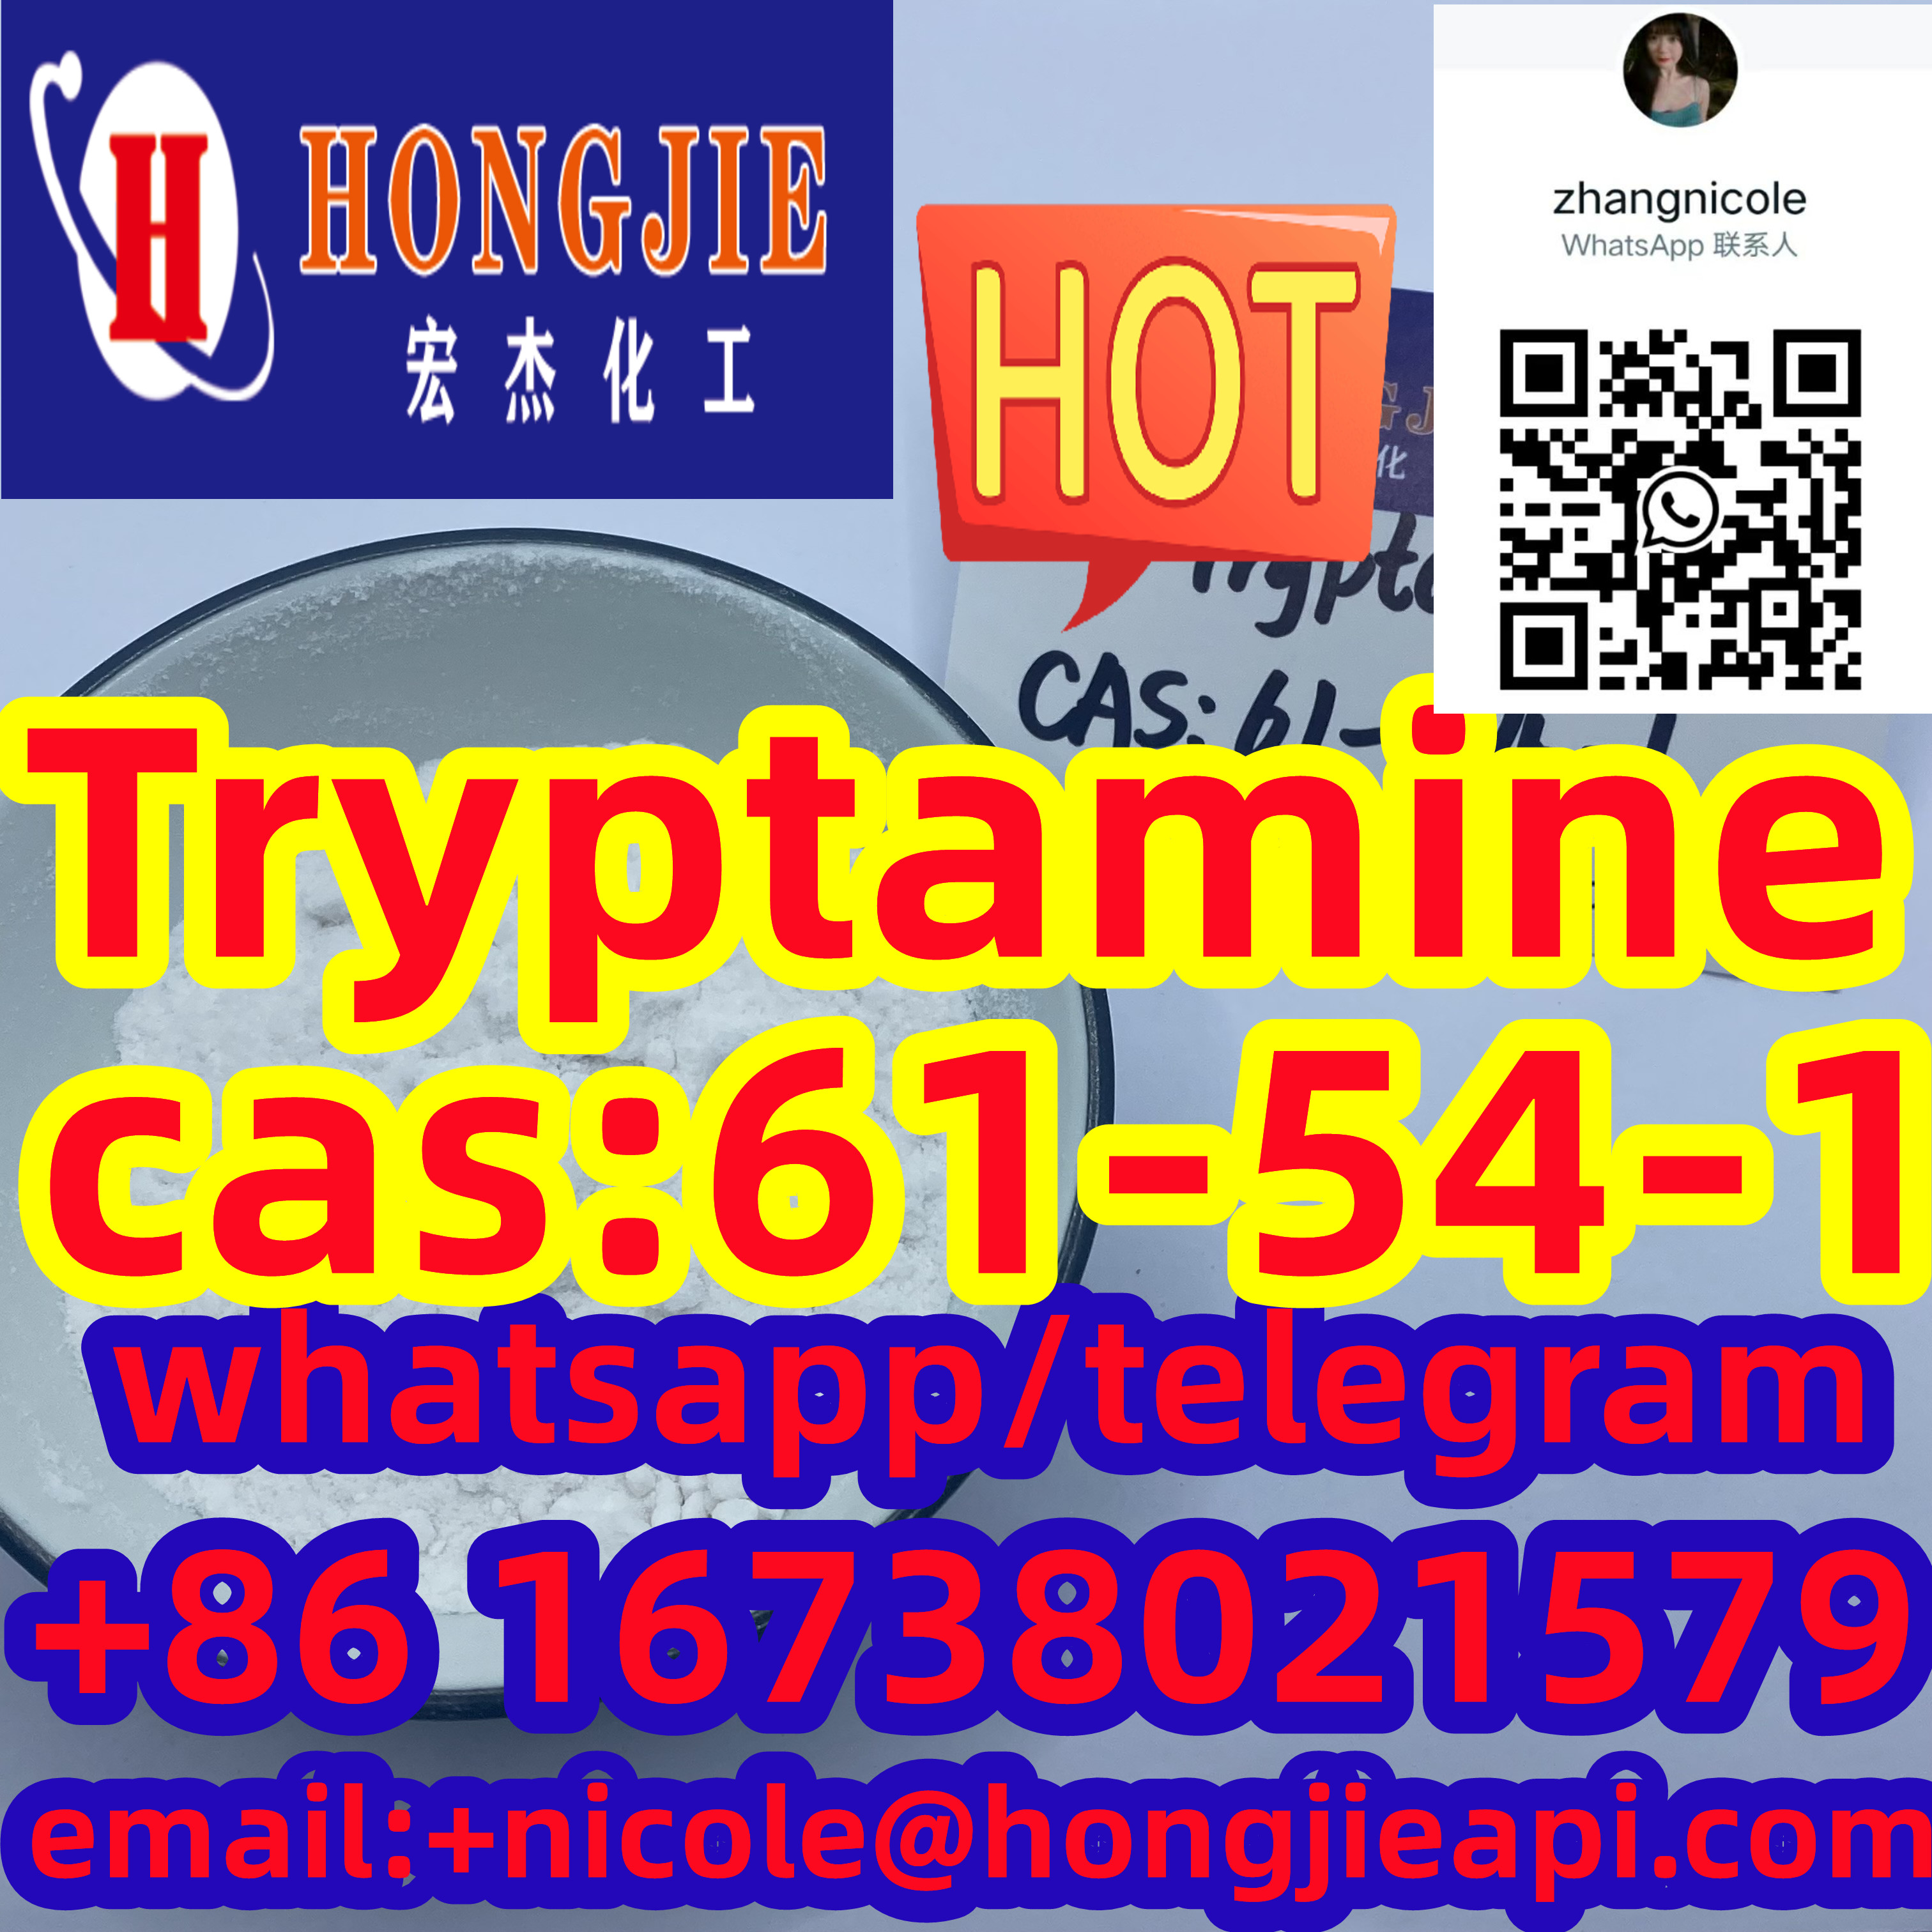 CAS 61-54-1 tryptamine